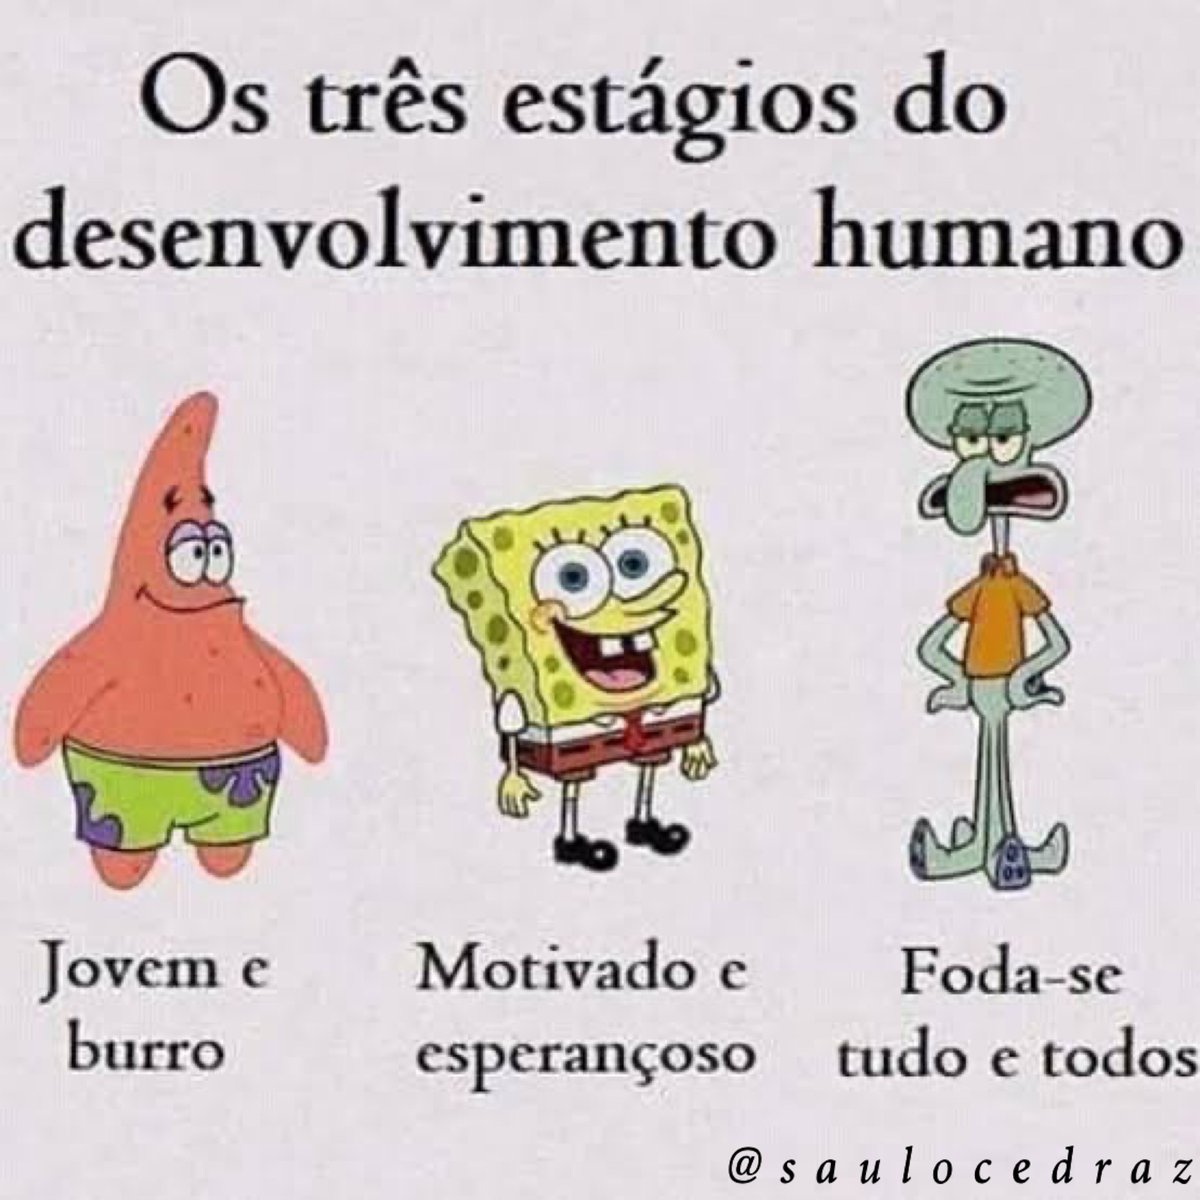 Saulo Cedraz on X: Ah, esses filósofos… ✌🏻 #meme #memes #humor #comedia  #memesbrasil #engraçado #zueira #dankmemes #piadas #piada #risos Instagram # memes😂 #memes #funny #dankmemes #comedy  / X